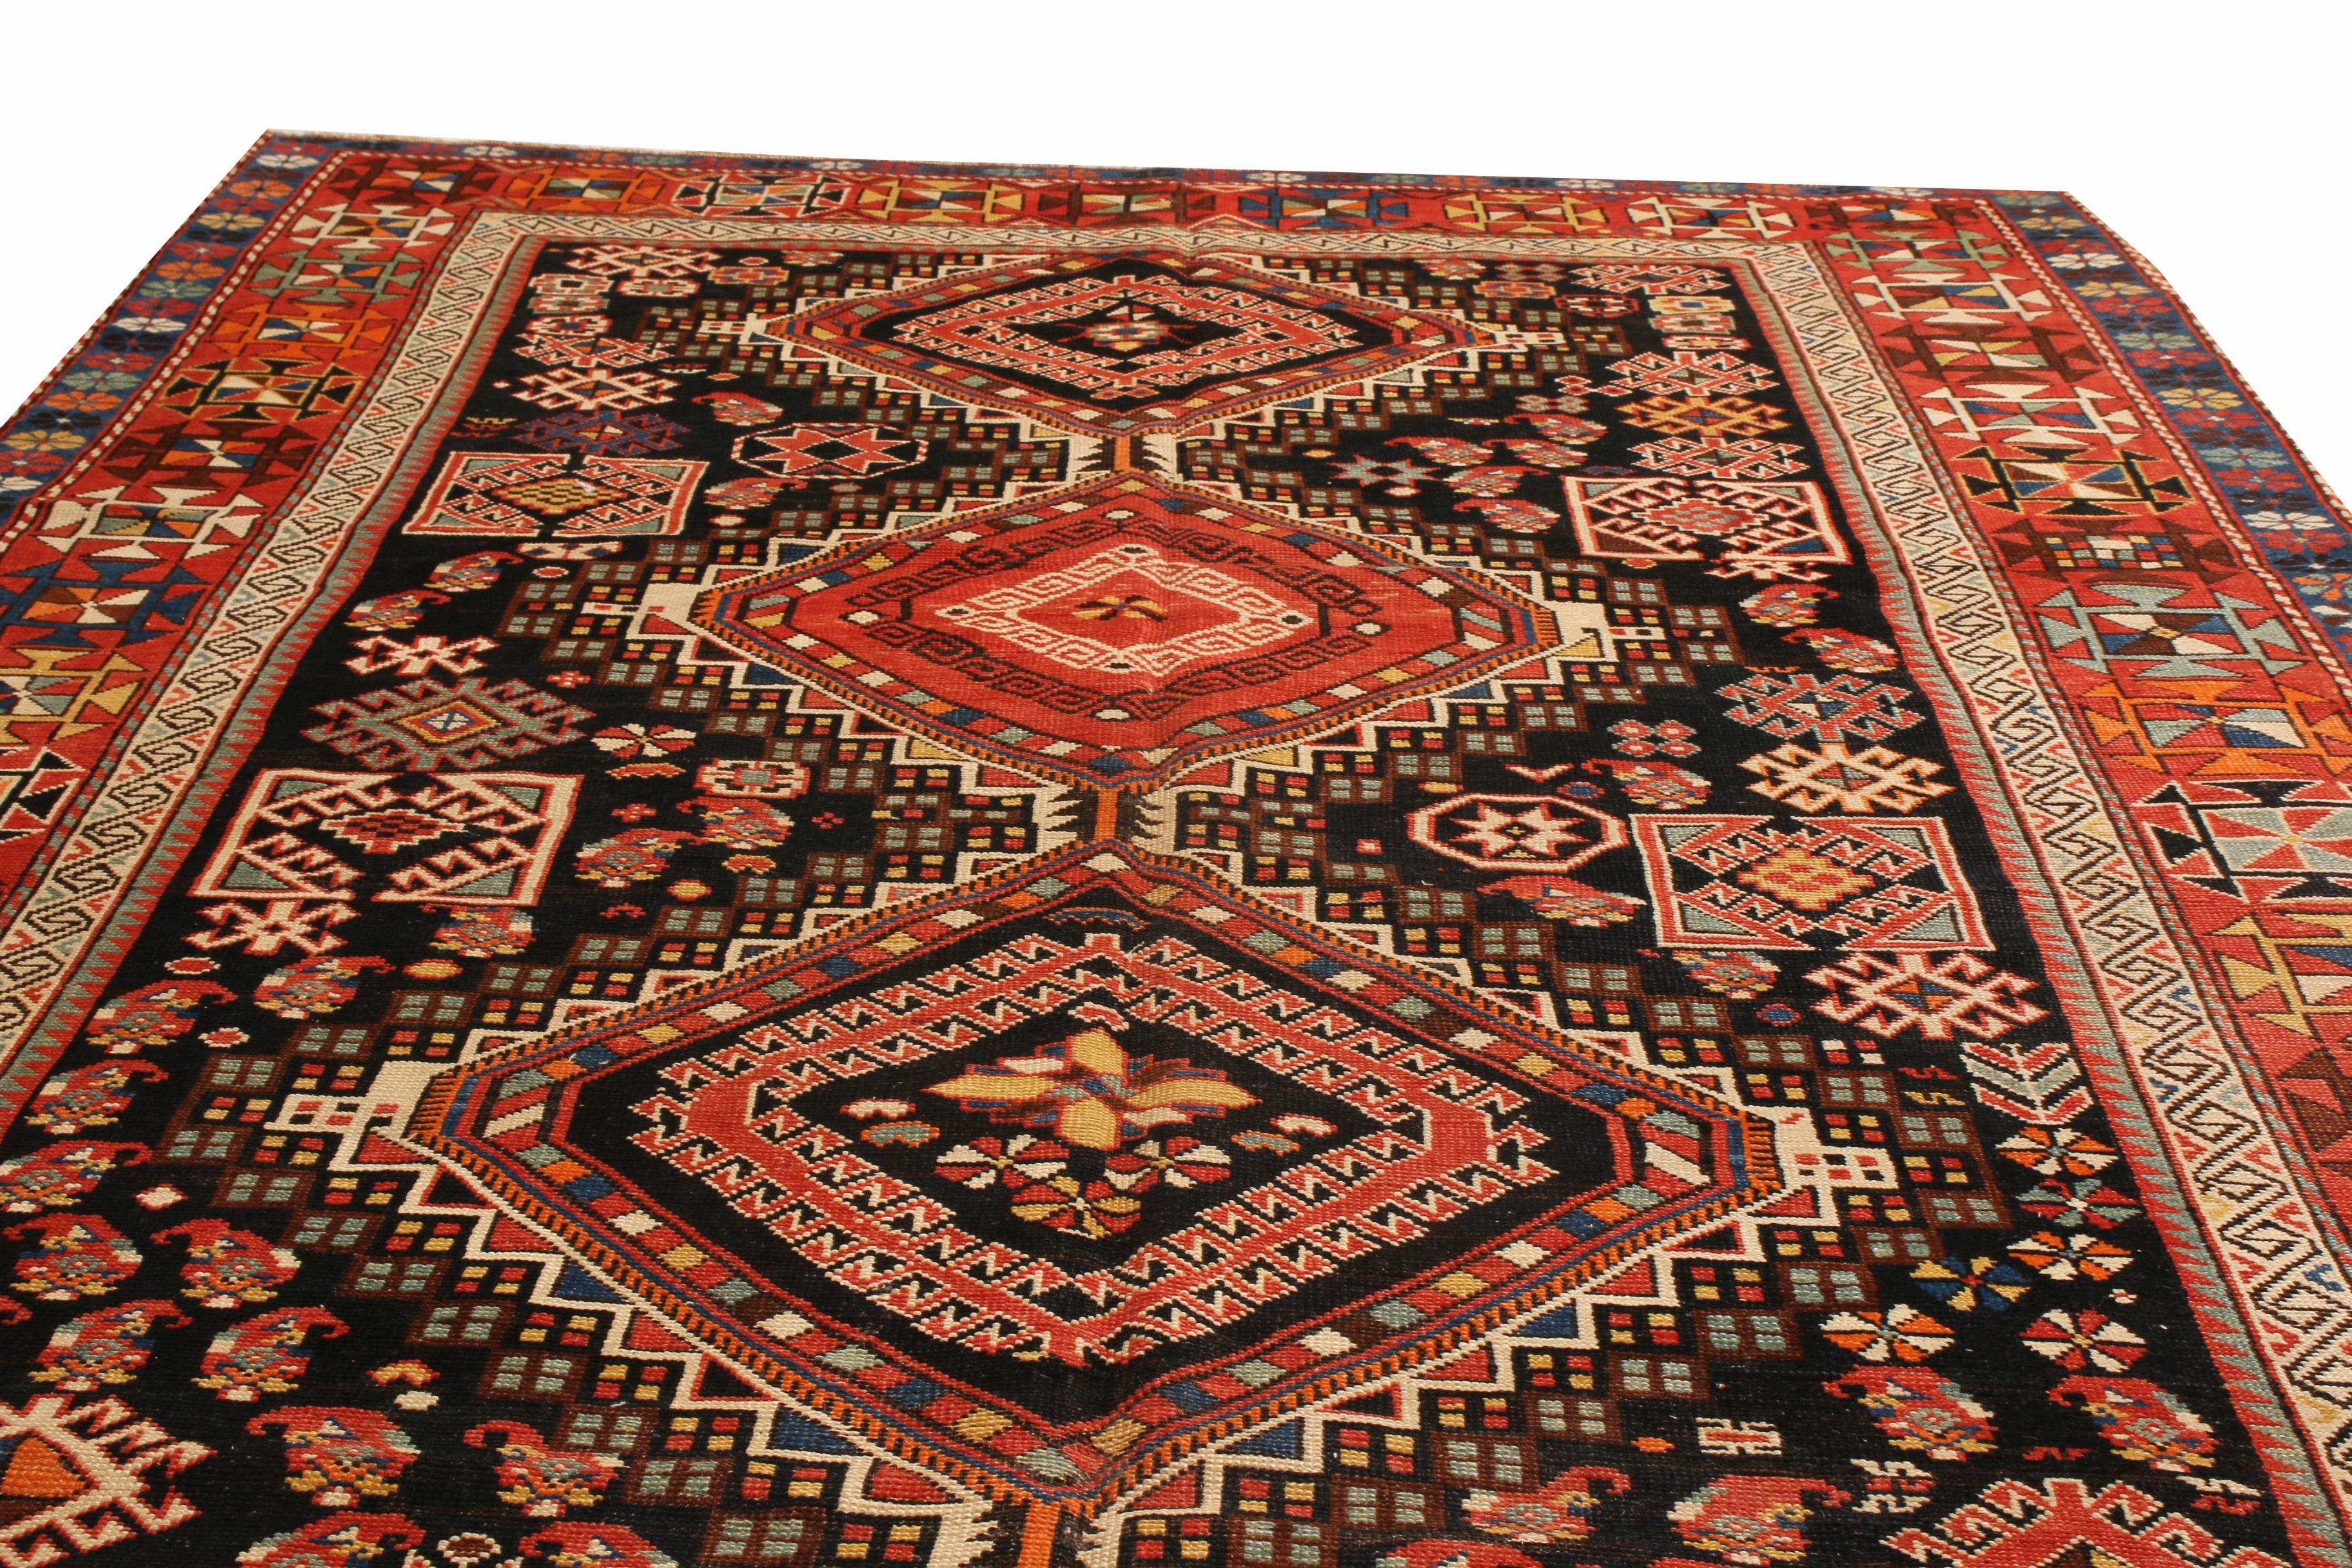 Ein Meisterwerk der Ausgewogenheit und Harmonie, ein 5x10 antiker Stammes-Teppich der russischen Schirwan-Linie mit einem komplizierten geometrischen Muster in einem skurrilen Farbspiel aus Rot, Schwarz und Blau - köstlich akzentuiert durch klares